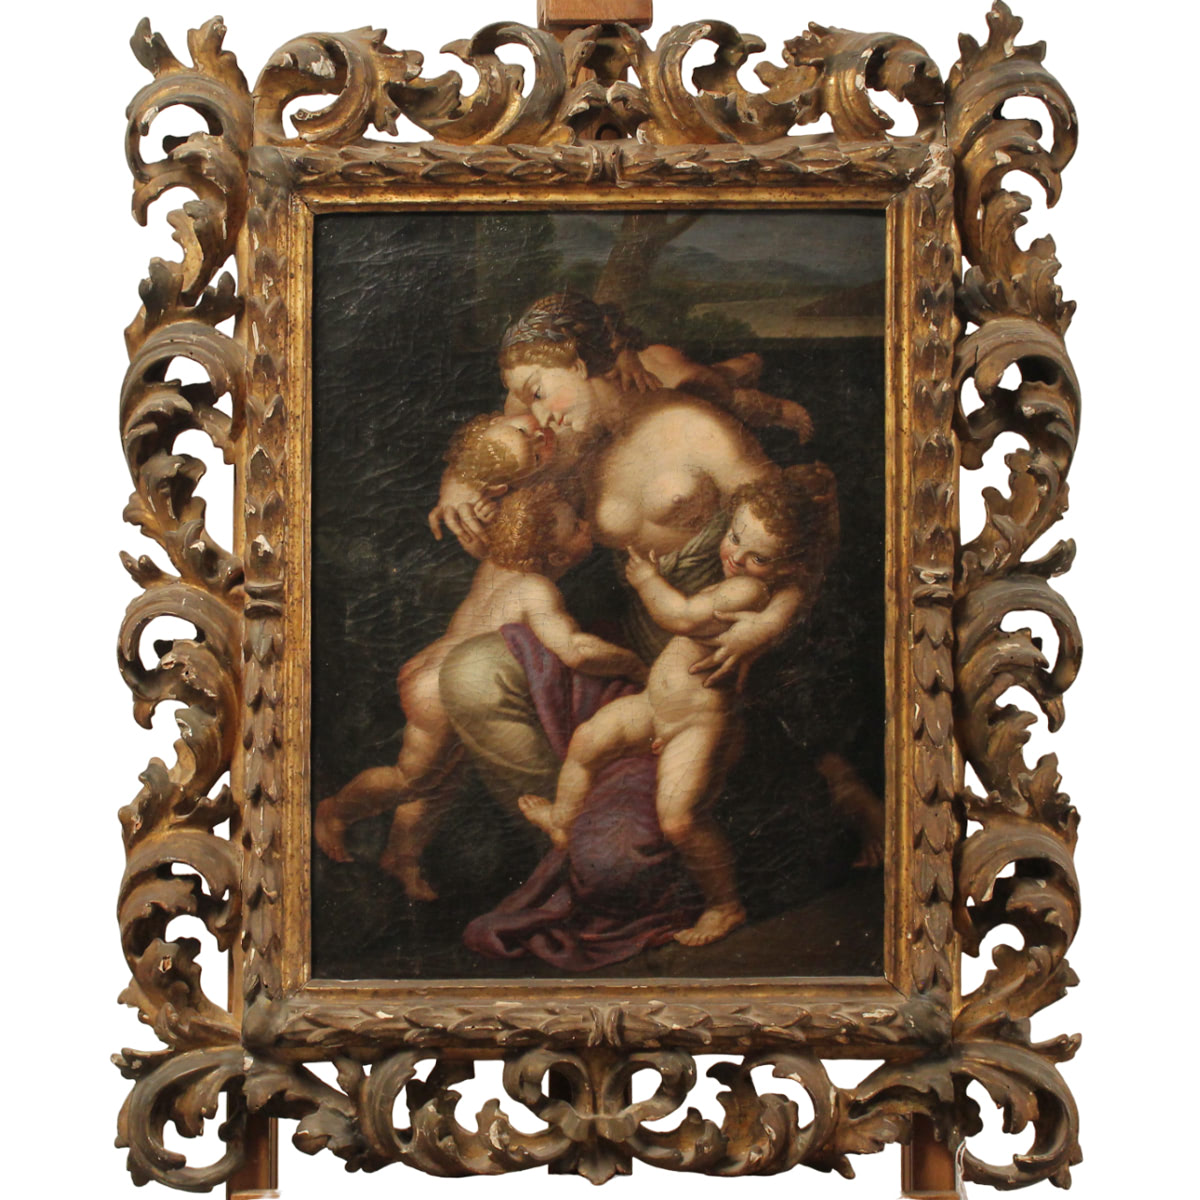 Scuola emiliana della fine del secolo XVII "Amore materno" - Emilian school of the end of the 17th century "Maternal love"